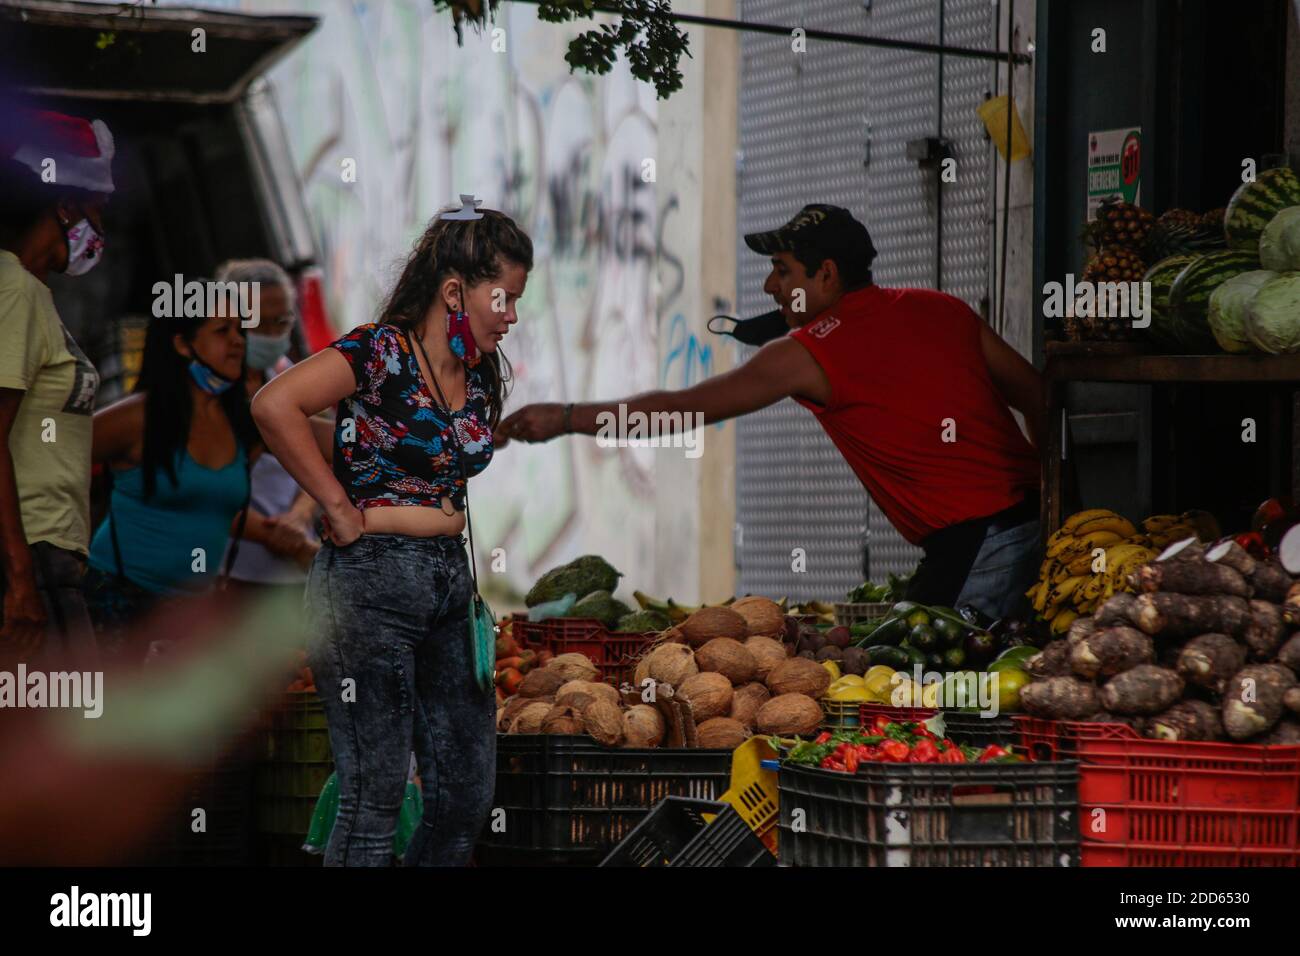 Caracas, Venezuela. November 2020. Menschen mit Masken unter der Nase kaufen auf einem Straßenmarkt mitten in der Corona-Pandemie Obst und Gemüse. Viele Menschen auf der ganzen Welt tragen die obligatorischen Masken unter der Nase oder sogar am Kinn. Nach Angaben des venezolanischen Gesundheitsministeriums sollen 100,143 Menschen im Land mit Covid-19 infiziert sein und die Sterblichkeitsrate beträgt 0.87 Prozent. Ende Oktober hatte Präsident Maduro behauptet, in Venezuela sei ein hochwirksames Mittel gegen das Corona-Virus entdeckt worden. Kredit: Rafael Hernandez/dpa/Alamy Live Nachrichten Stockfoto